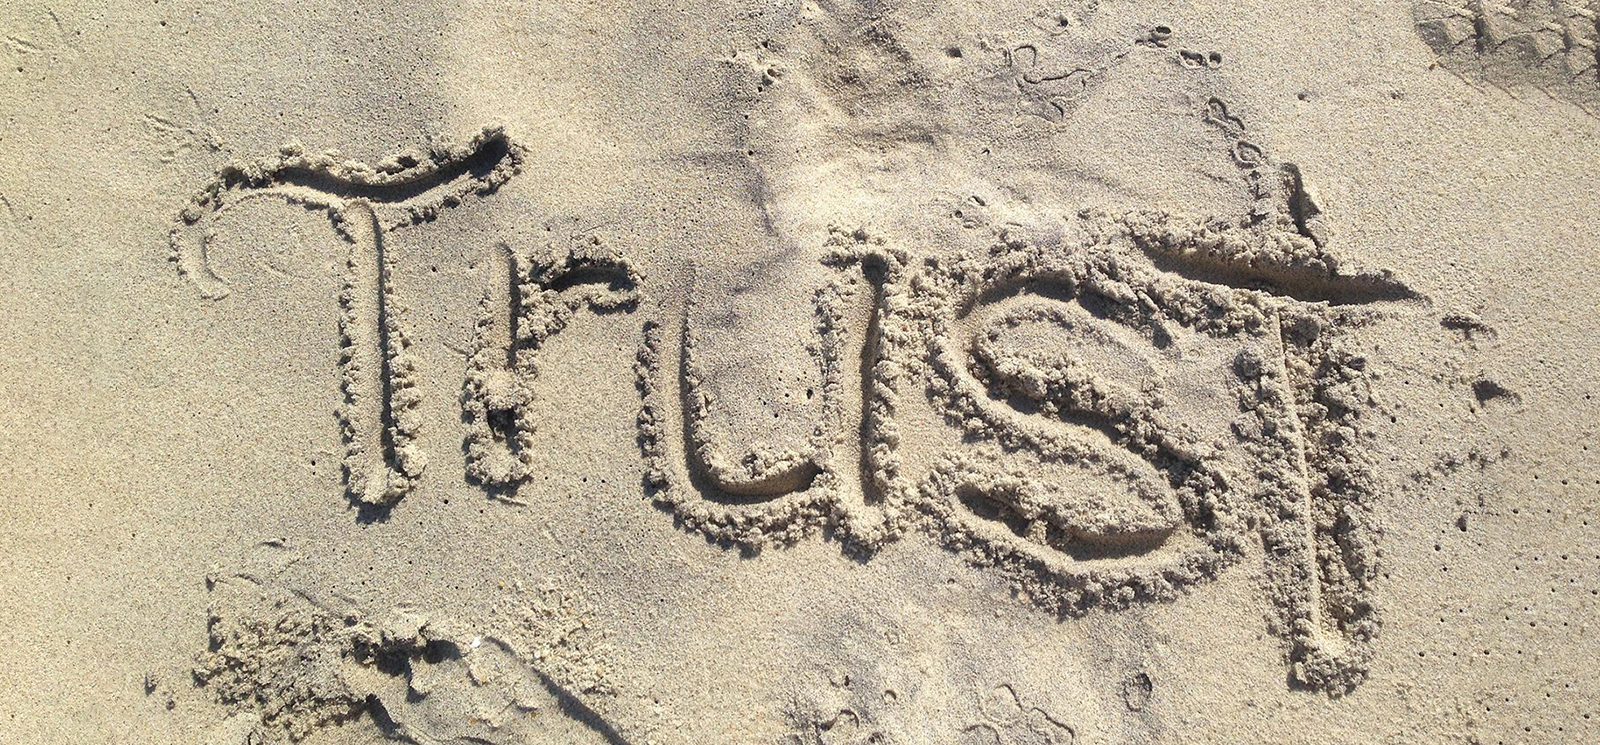 Foto von dem Wort "Trust" in den Sand geschrieben